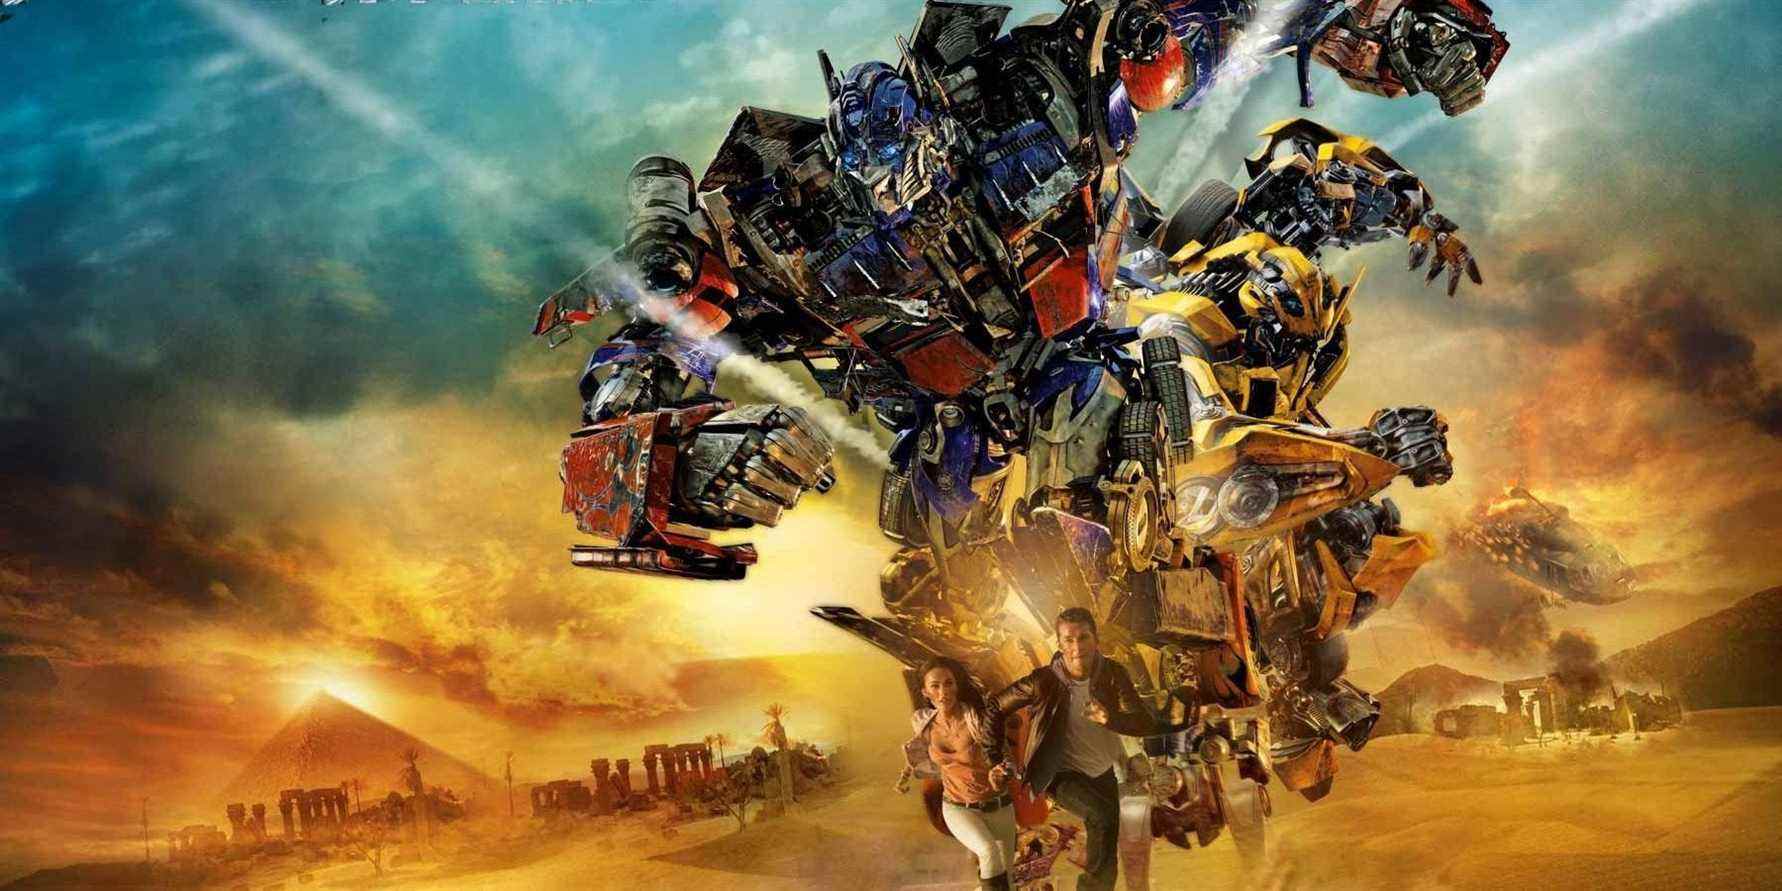 Transformers: La revanche